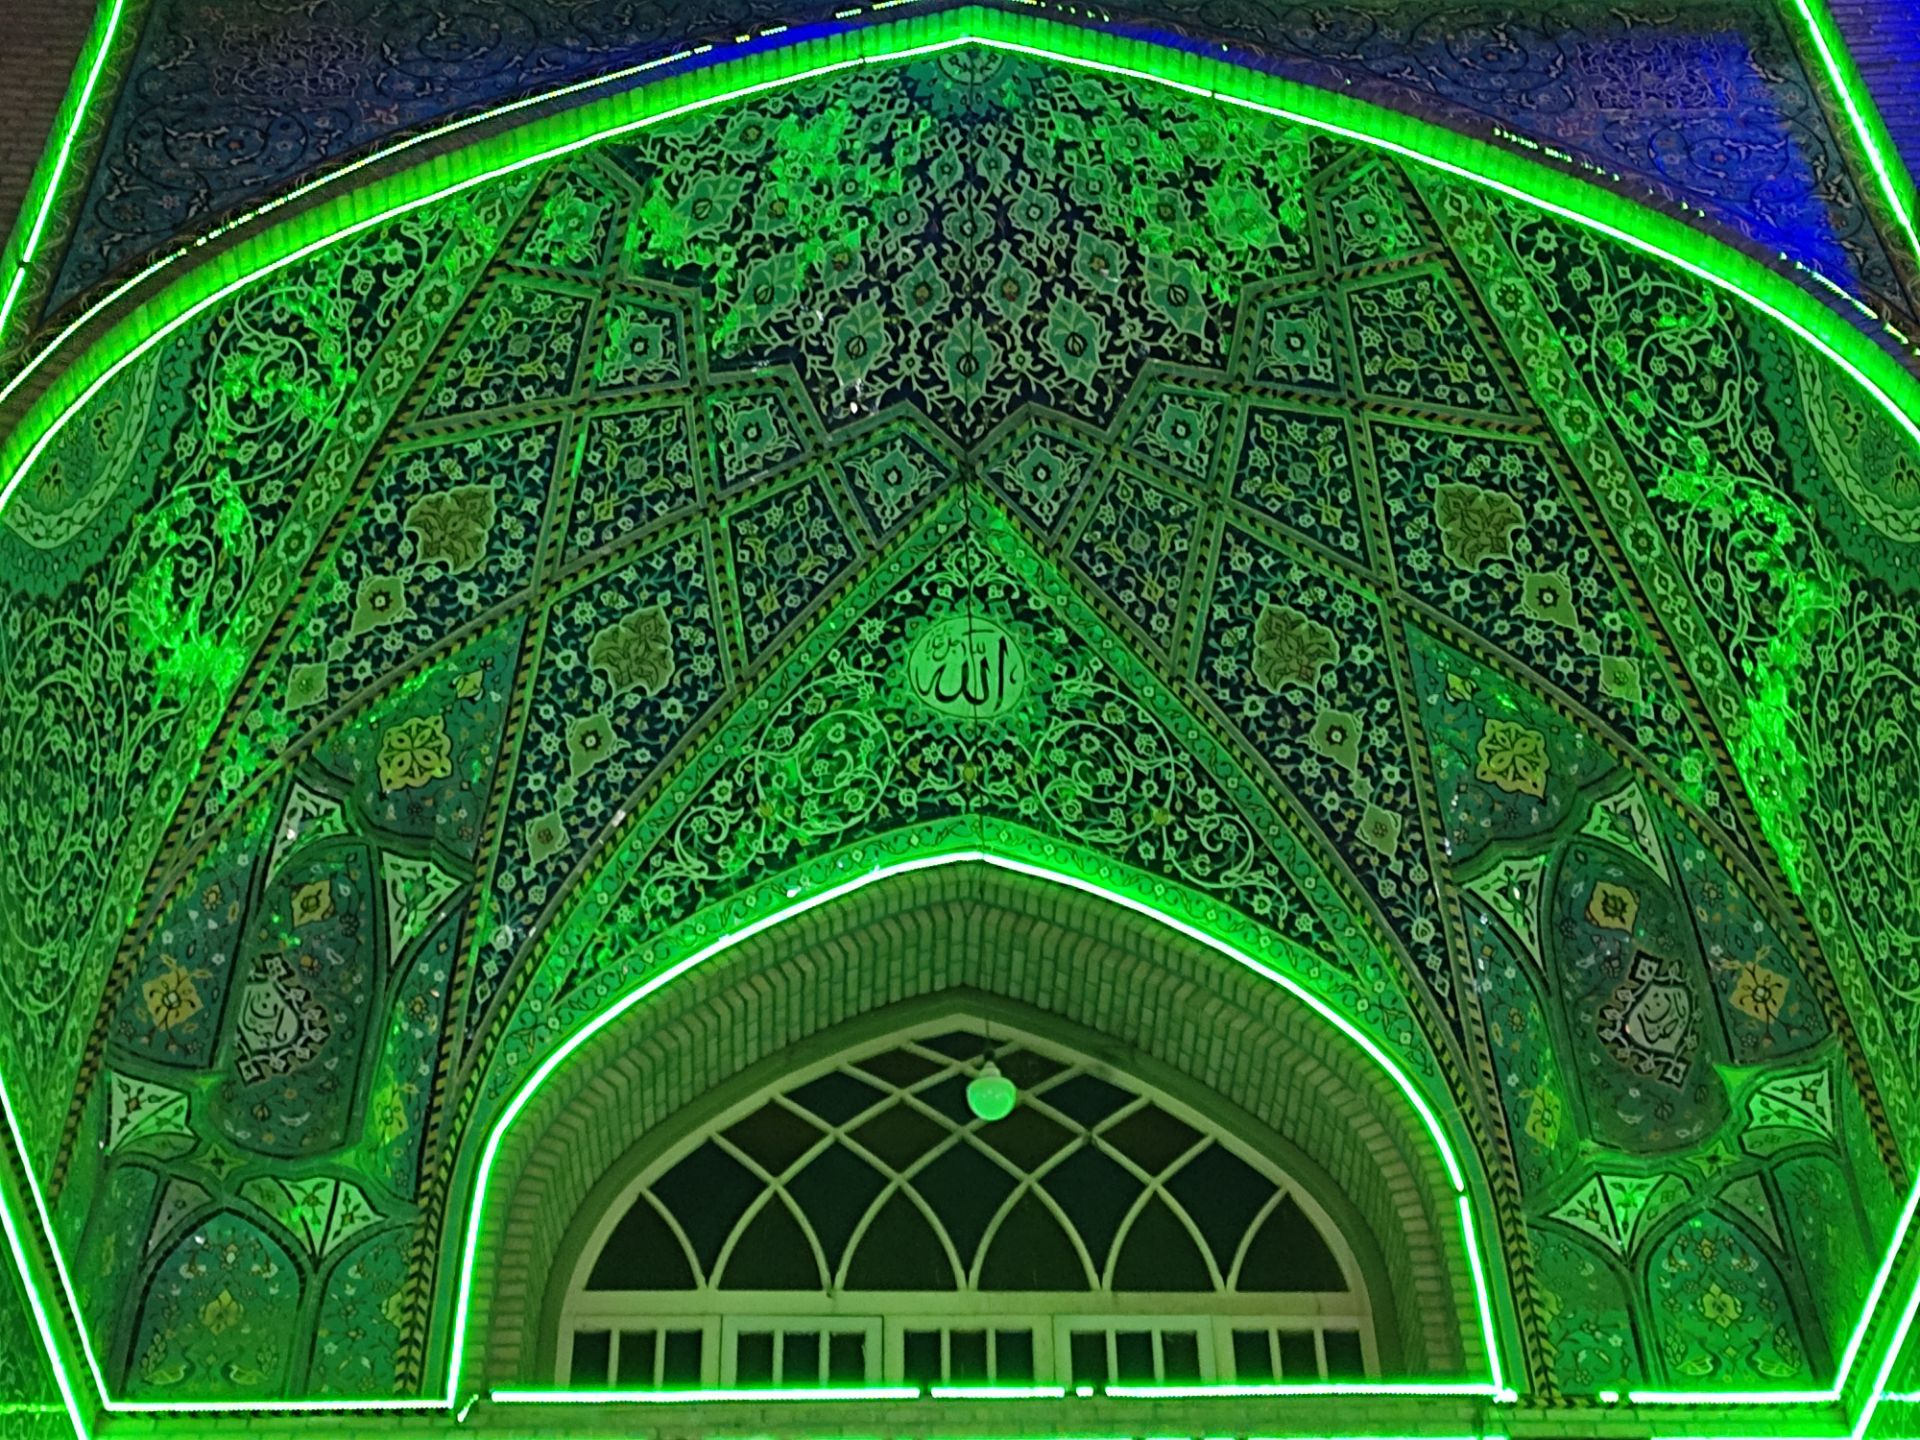 عکس نمونه ۲ برابری دوربین اصلی ردمی نوت ۱۰ در نور کم - نمای کاشی کاری مسجد